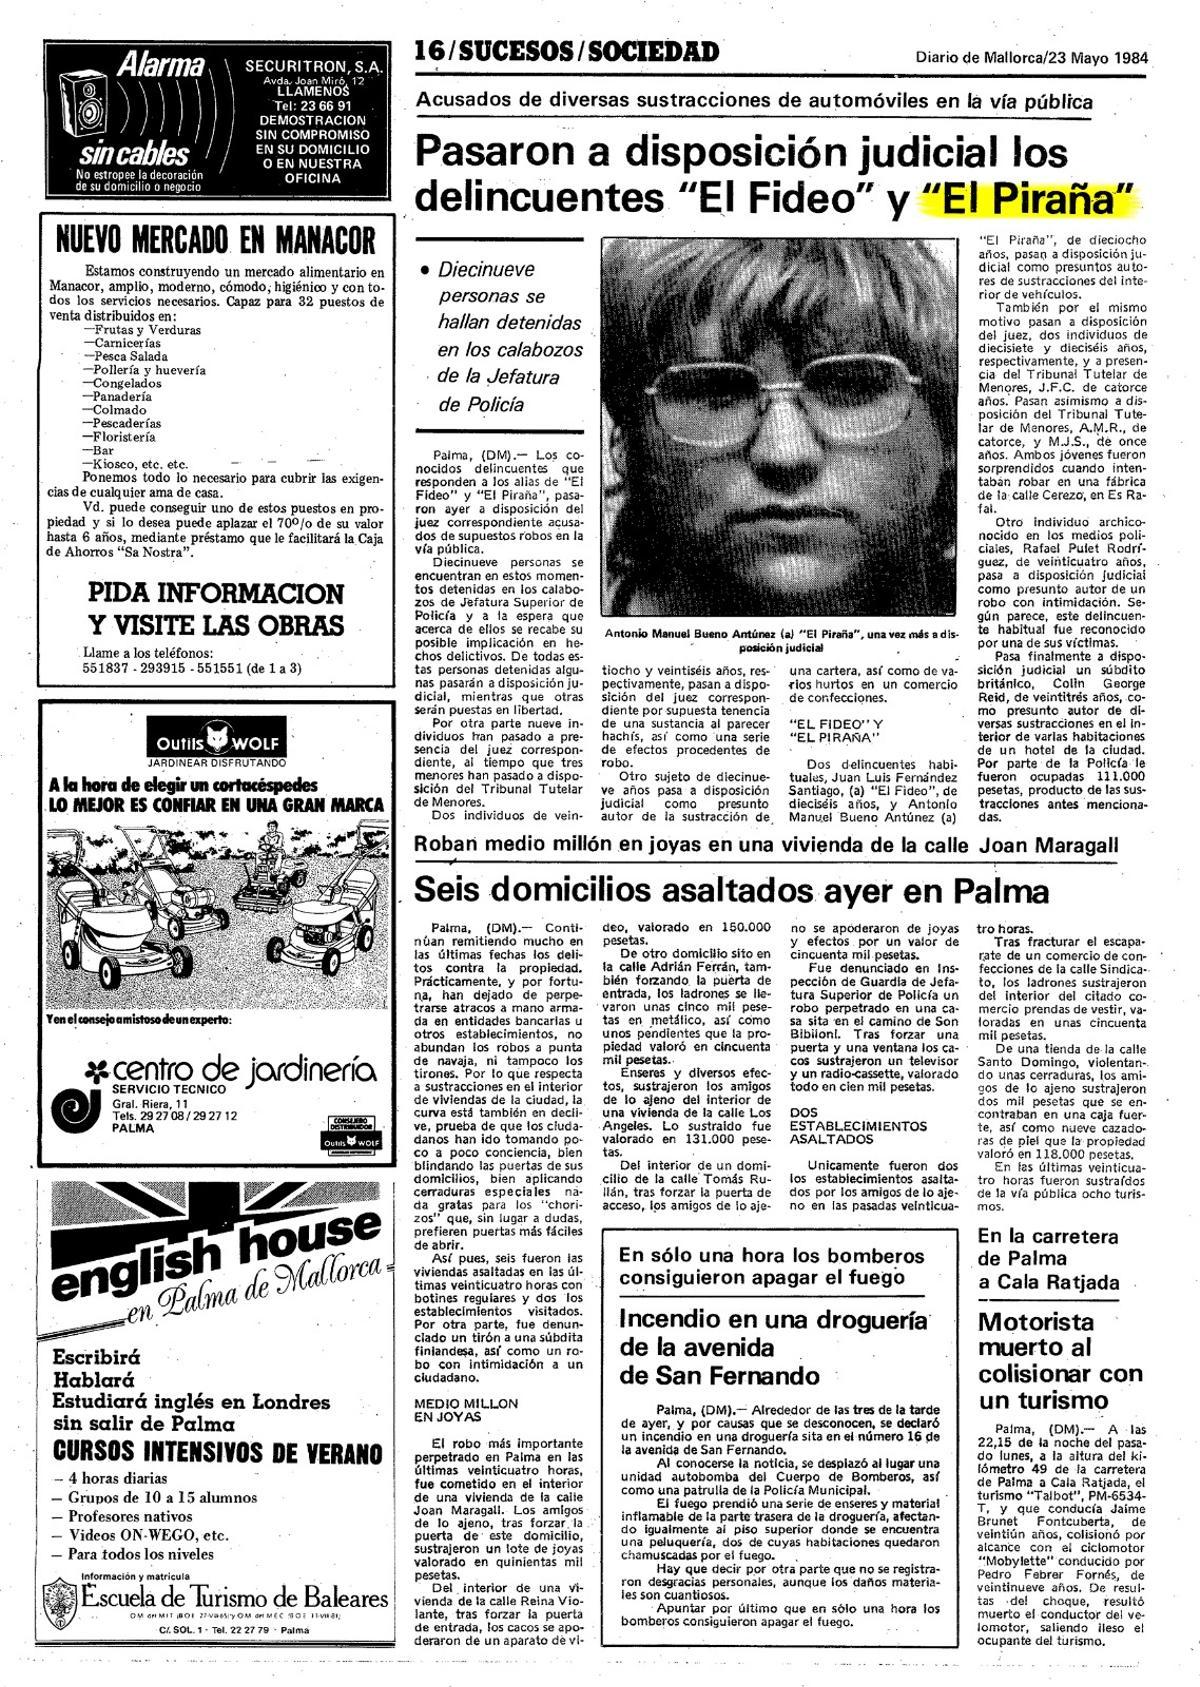 Recorte de Diario de Mallorca de mayo de 1984 sobre una de las detenciones de 'El Piraña'